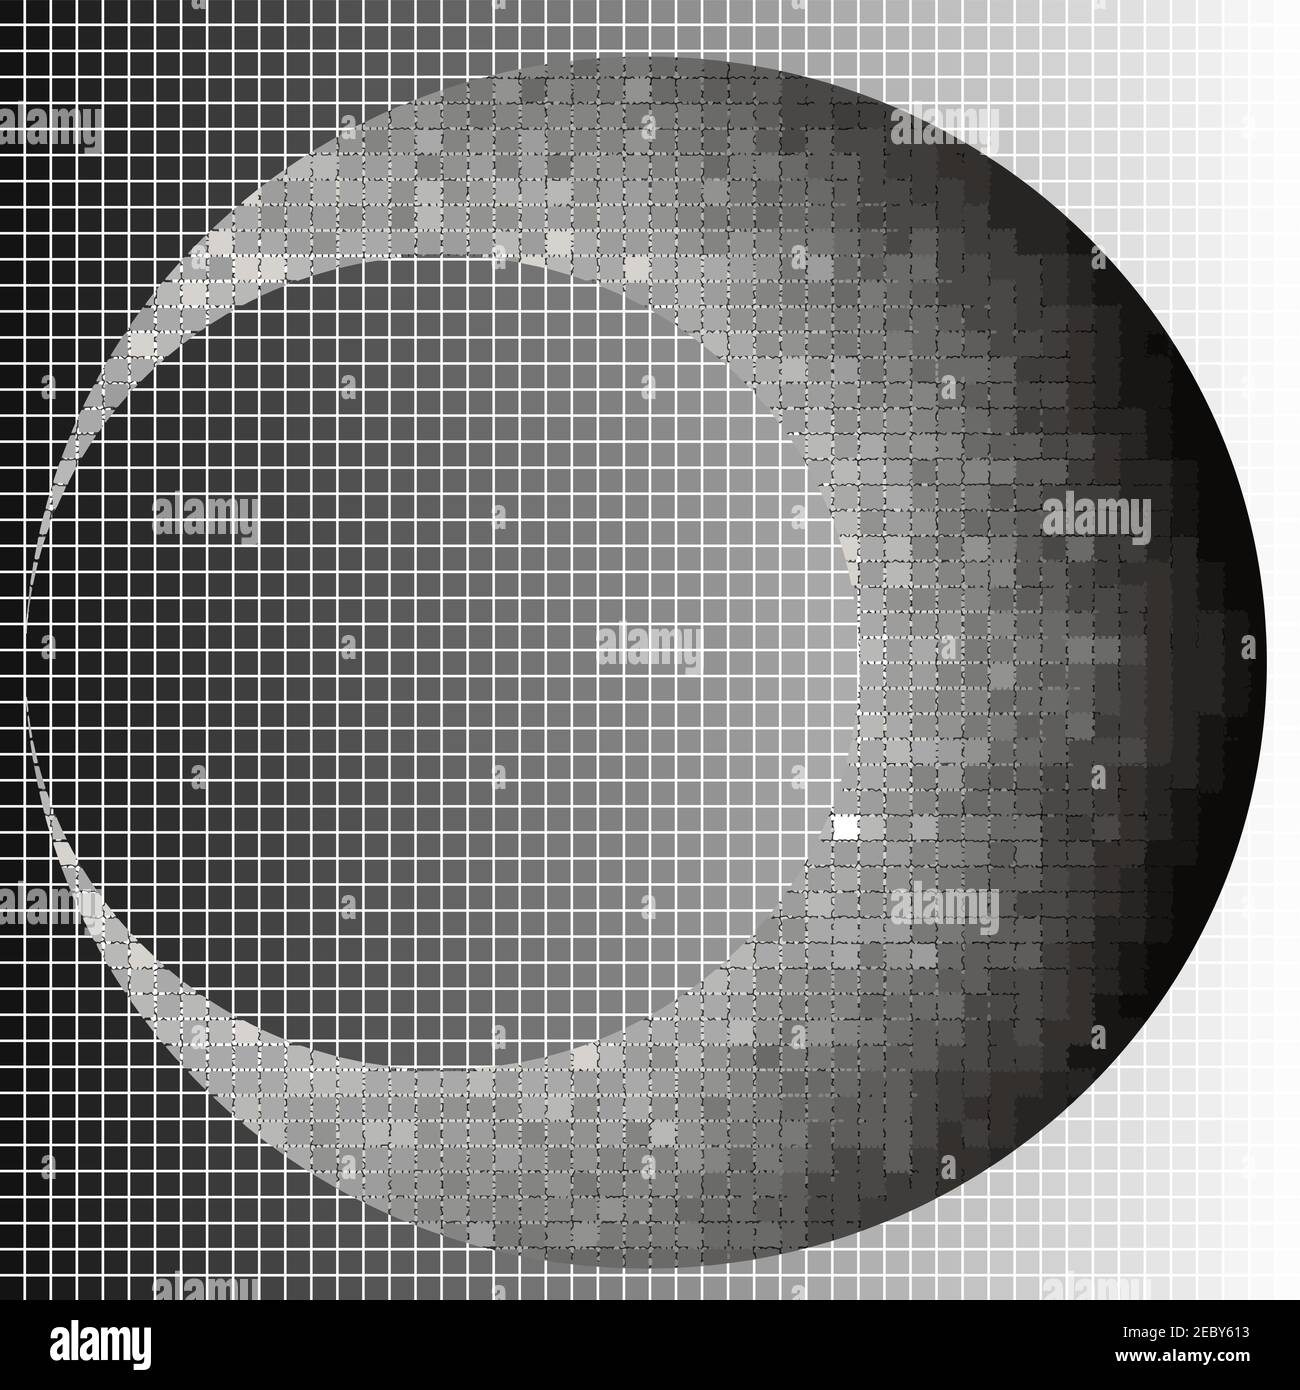 Halbmond Halbton Quadrate geometrische Kunst EPS10 Vektor-illustrationar. Hintergrund und der Mond auf verschiedenen Ebenen. Stock Vektor